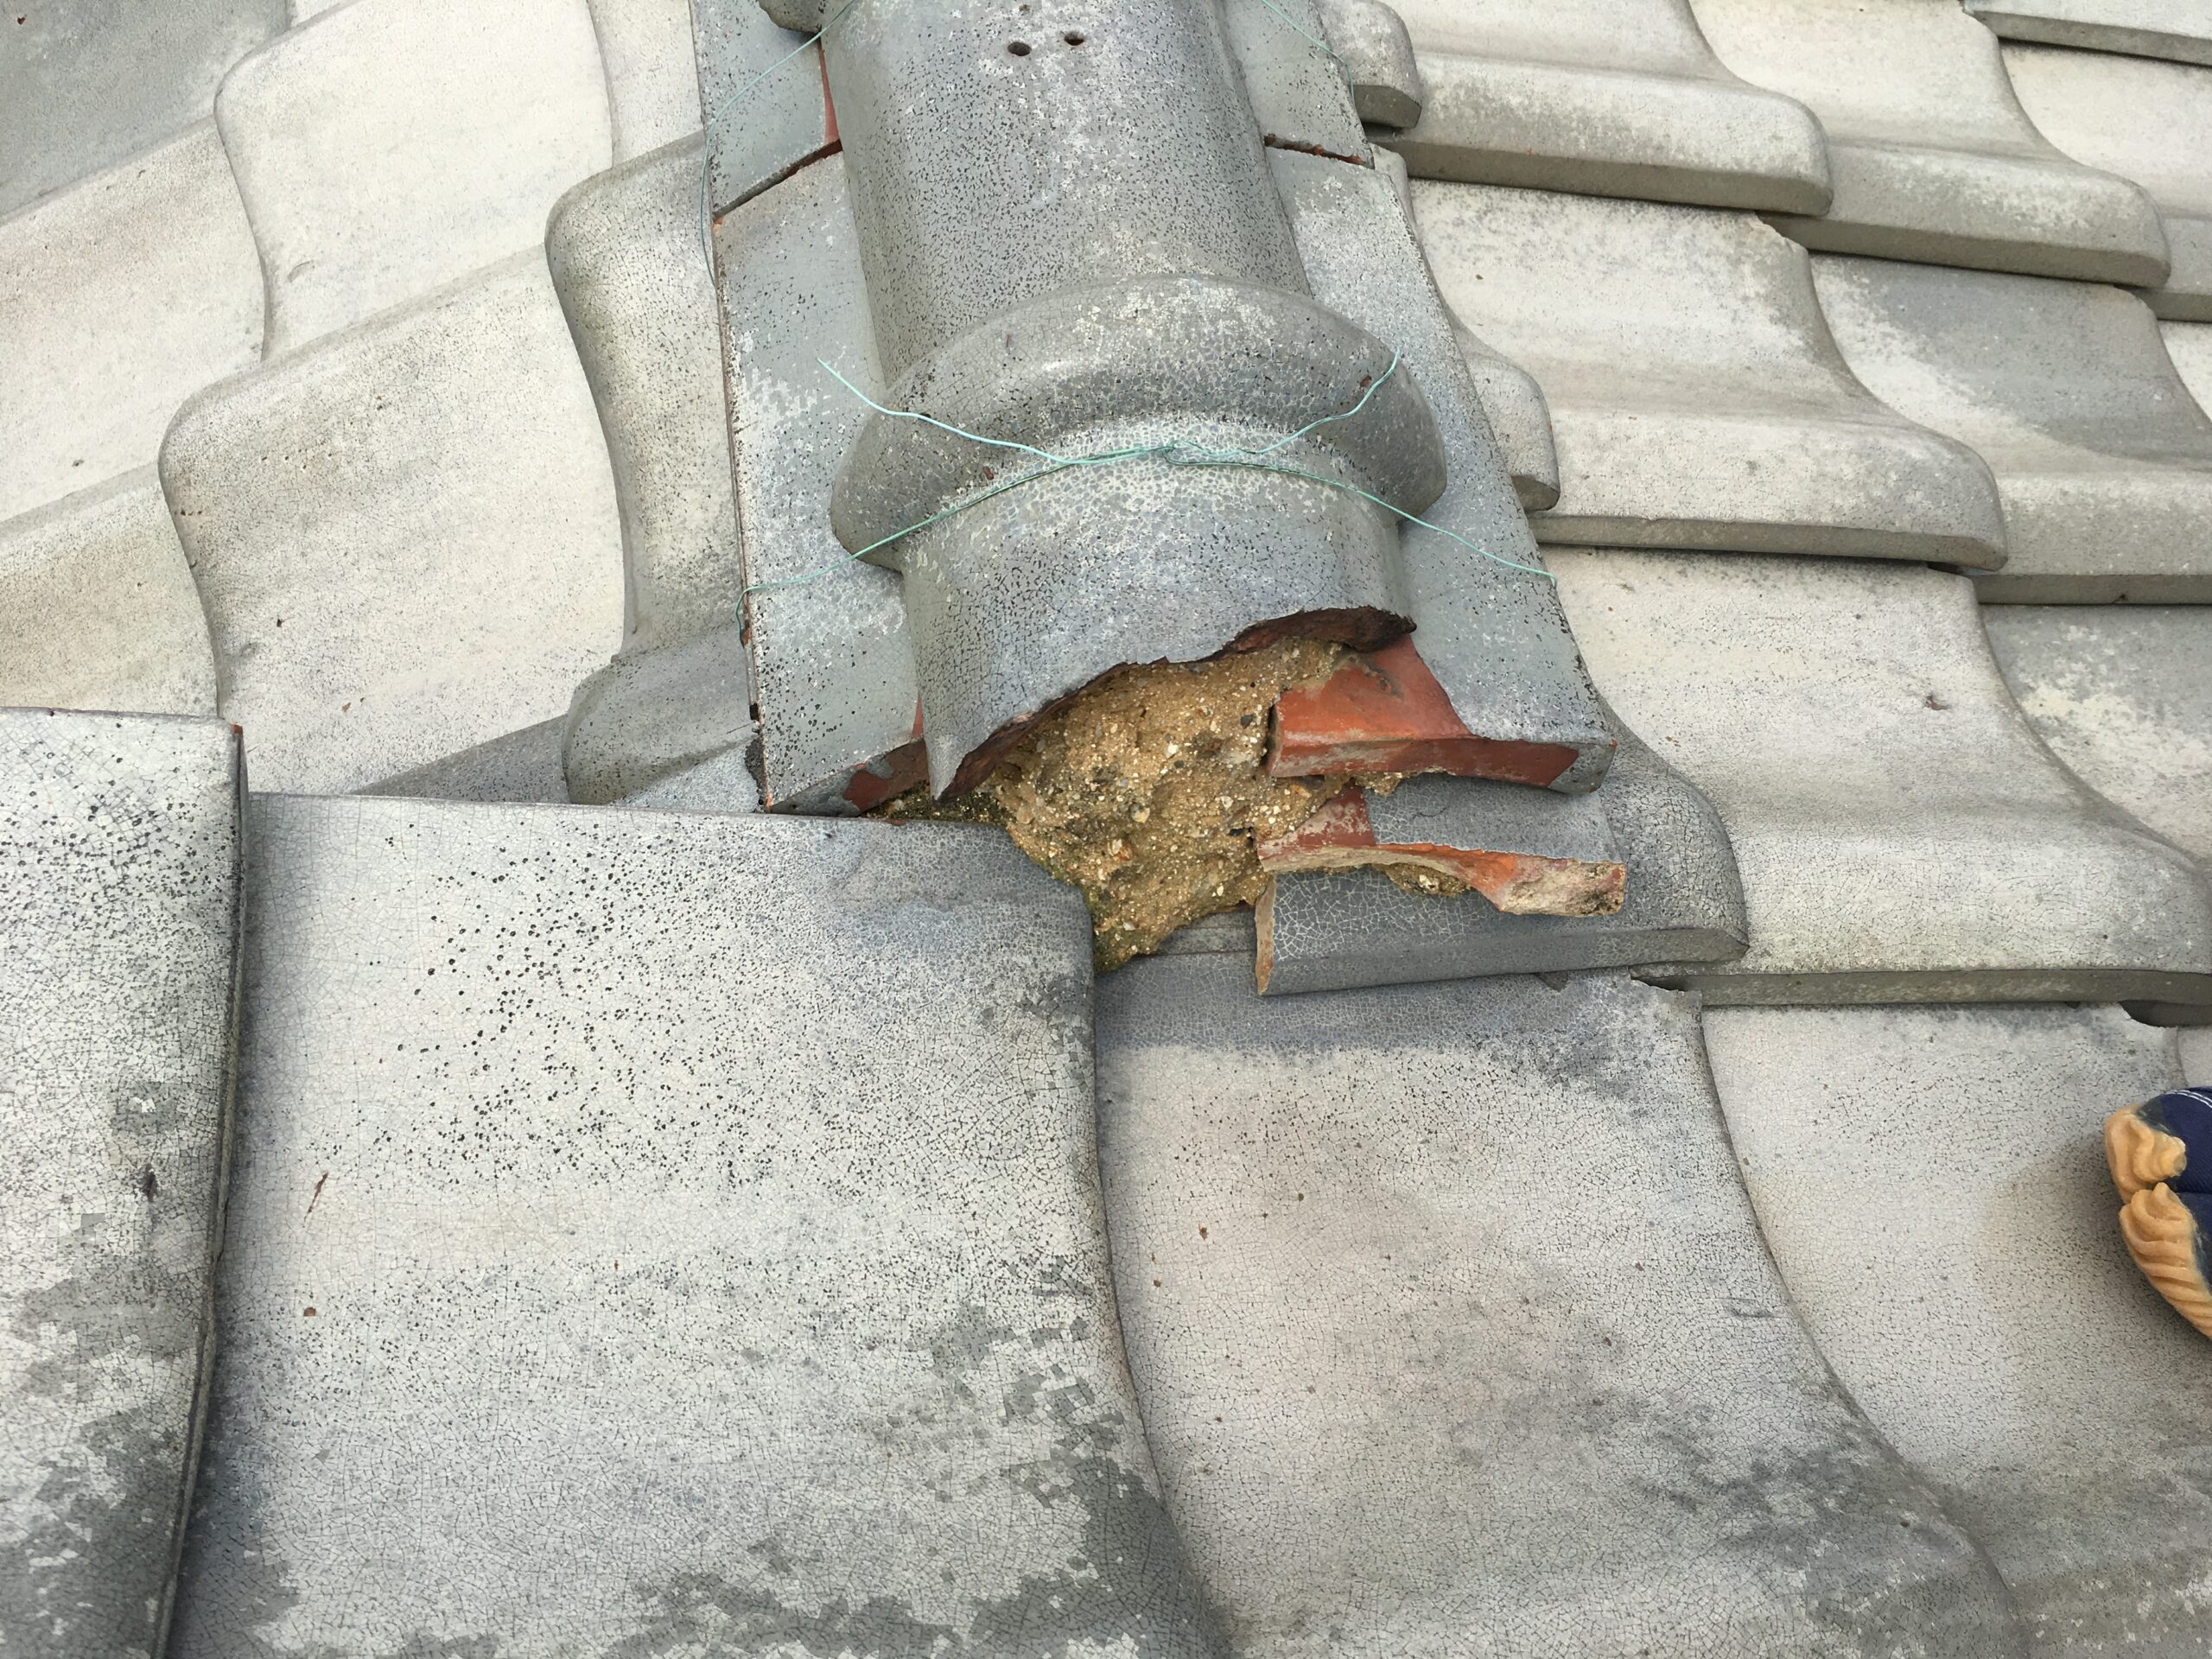 千葉県市川市の雨漏り修理で屋根瓦の一部張替えと漆喰の部分補修をさせていただきました